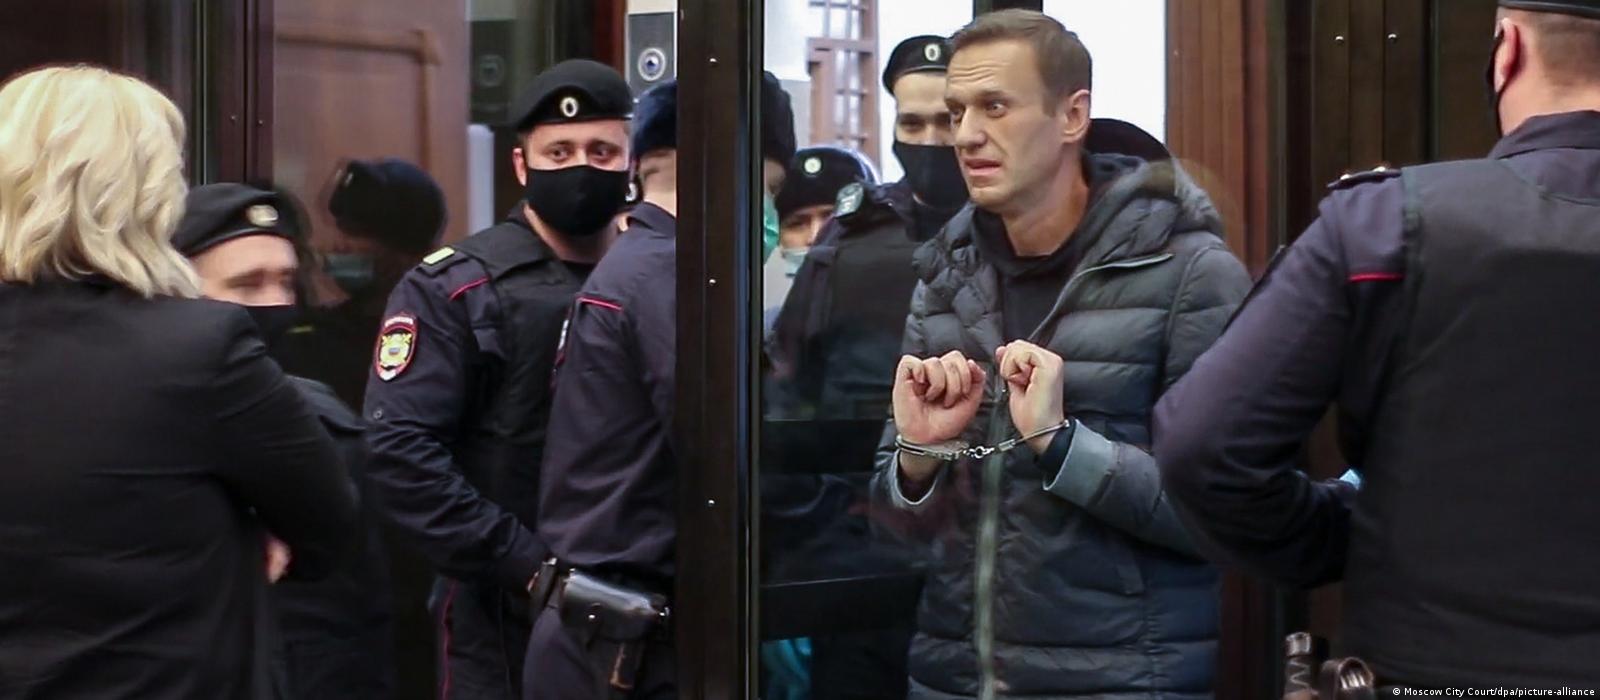 Trei jurnaliste ruse de opoziție ar fi fost otrăvite